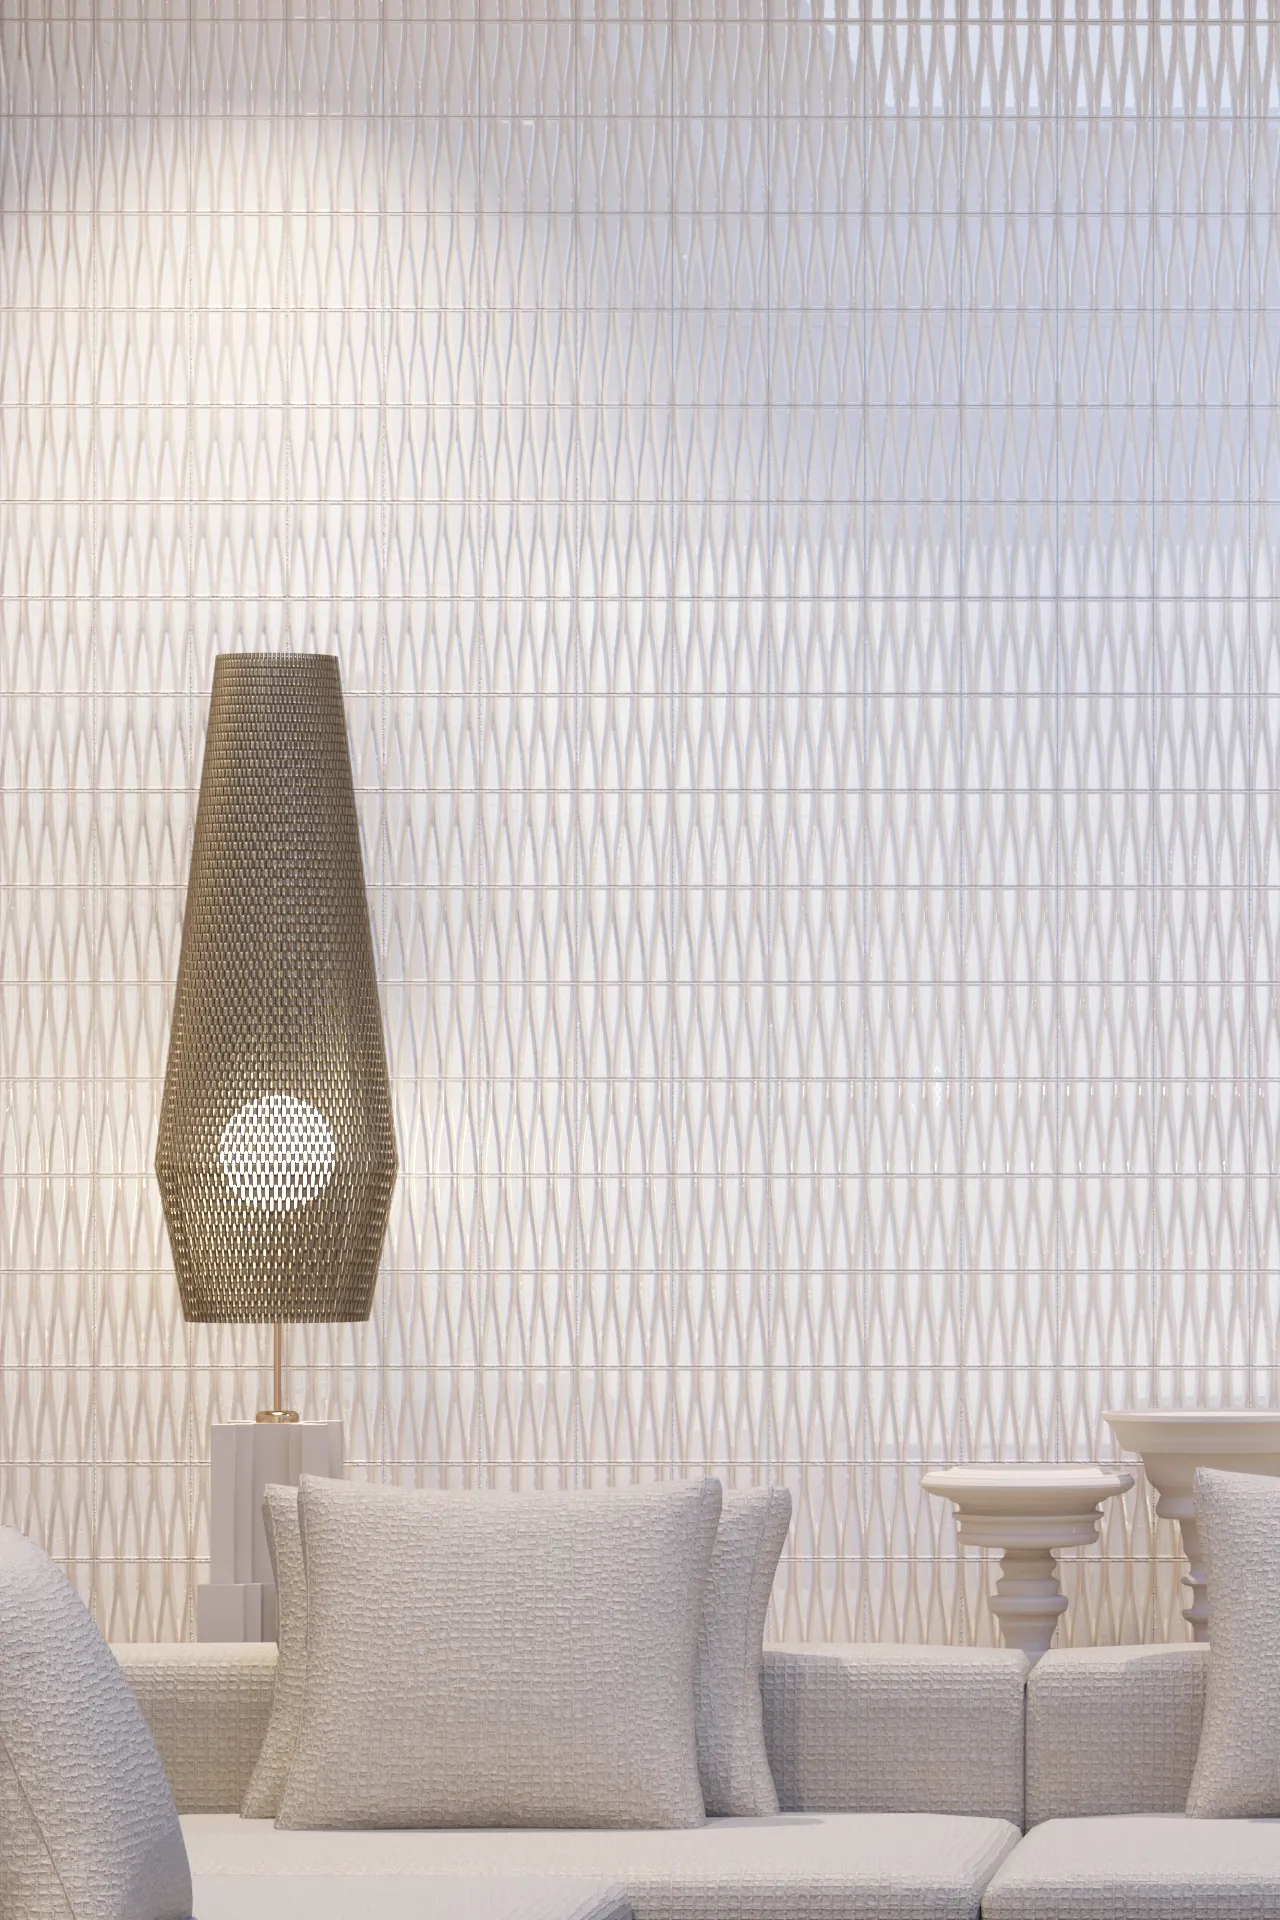 Moderne Weave Wall Tile